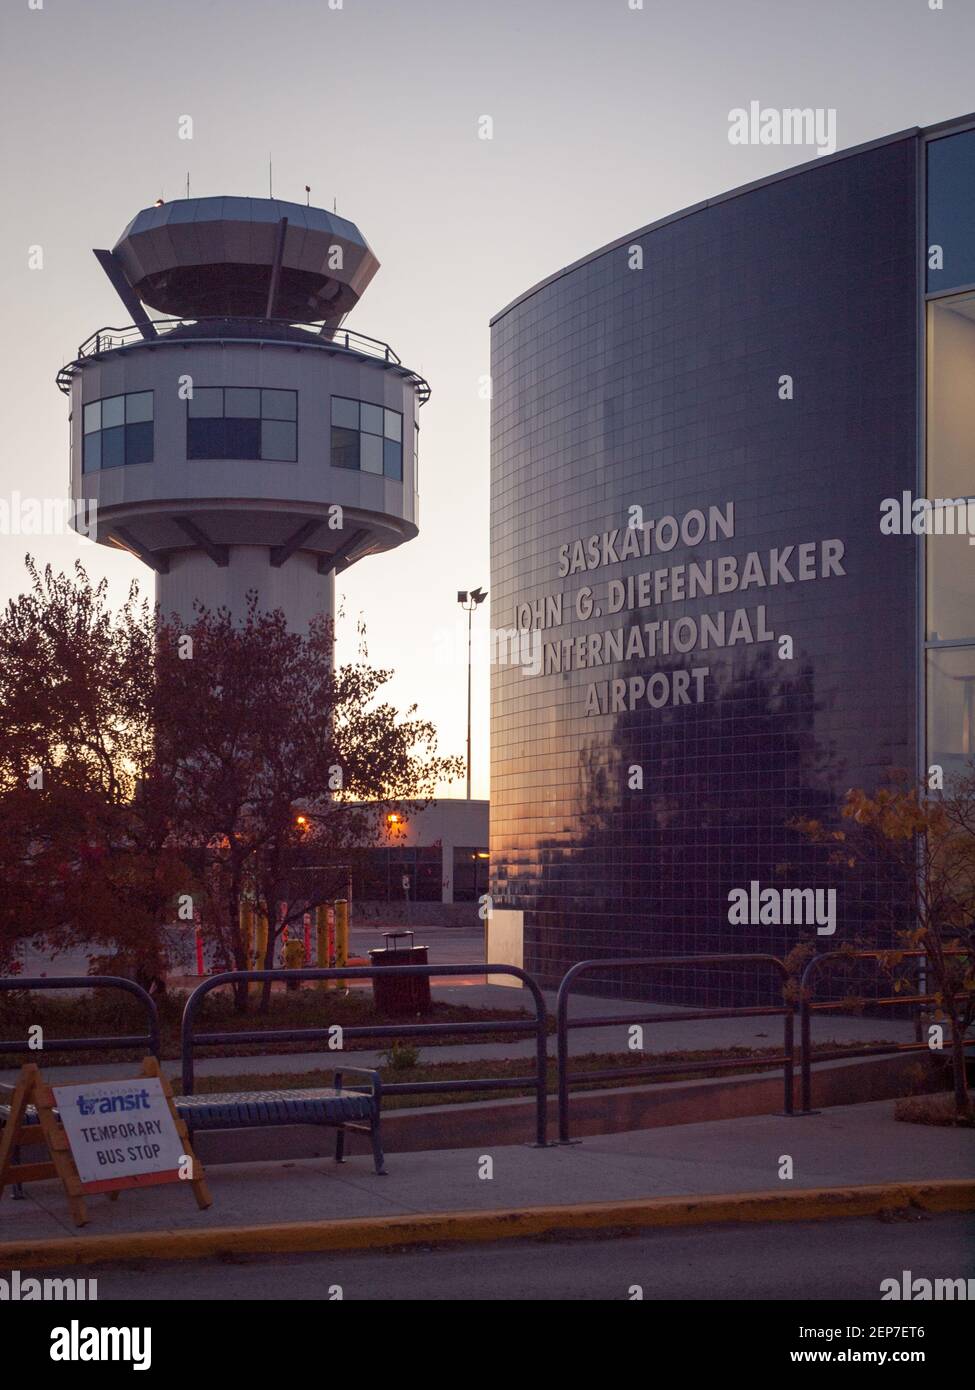 Una vista della torre di controllo e dell'edificio terminale del Saskatoon John G. Diefenbaker International Airport a Saskatoon, Saskatchewan, Canada. Foto Stock